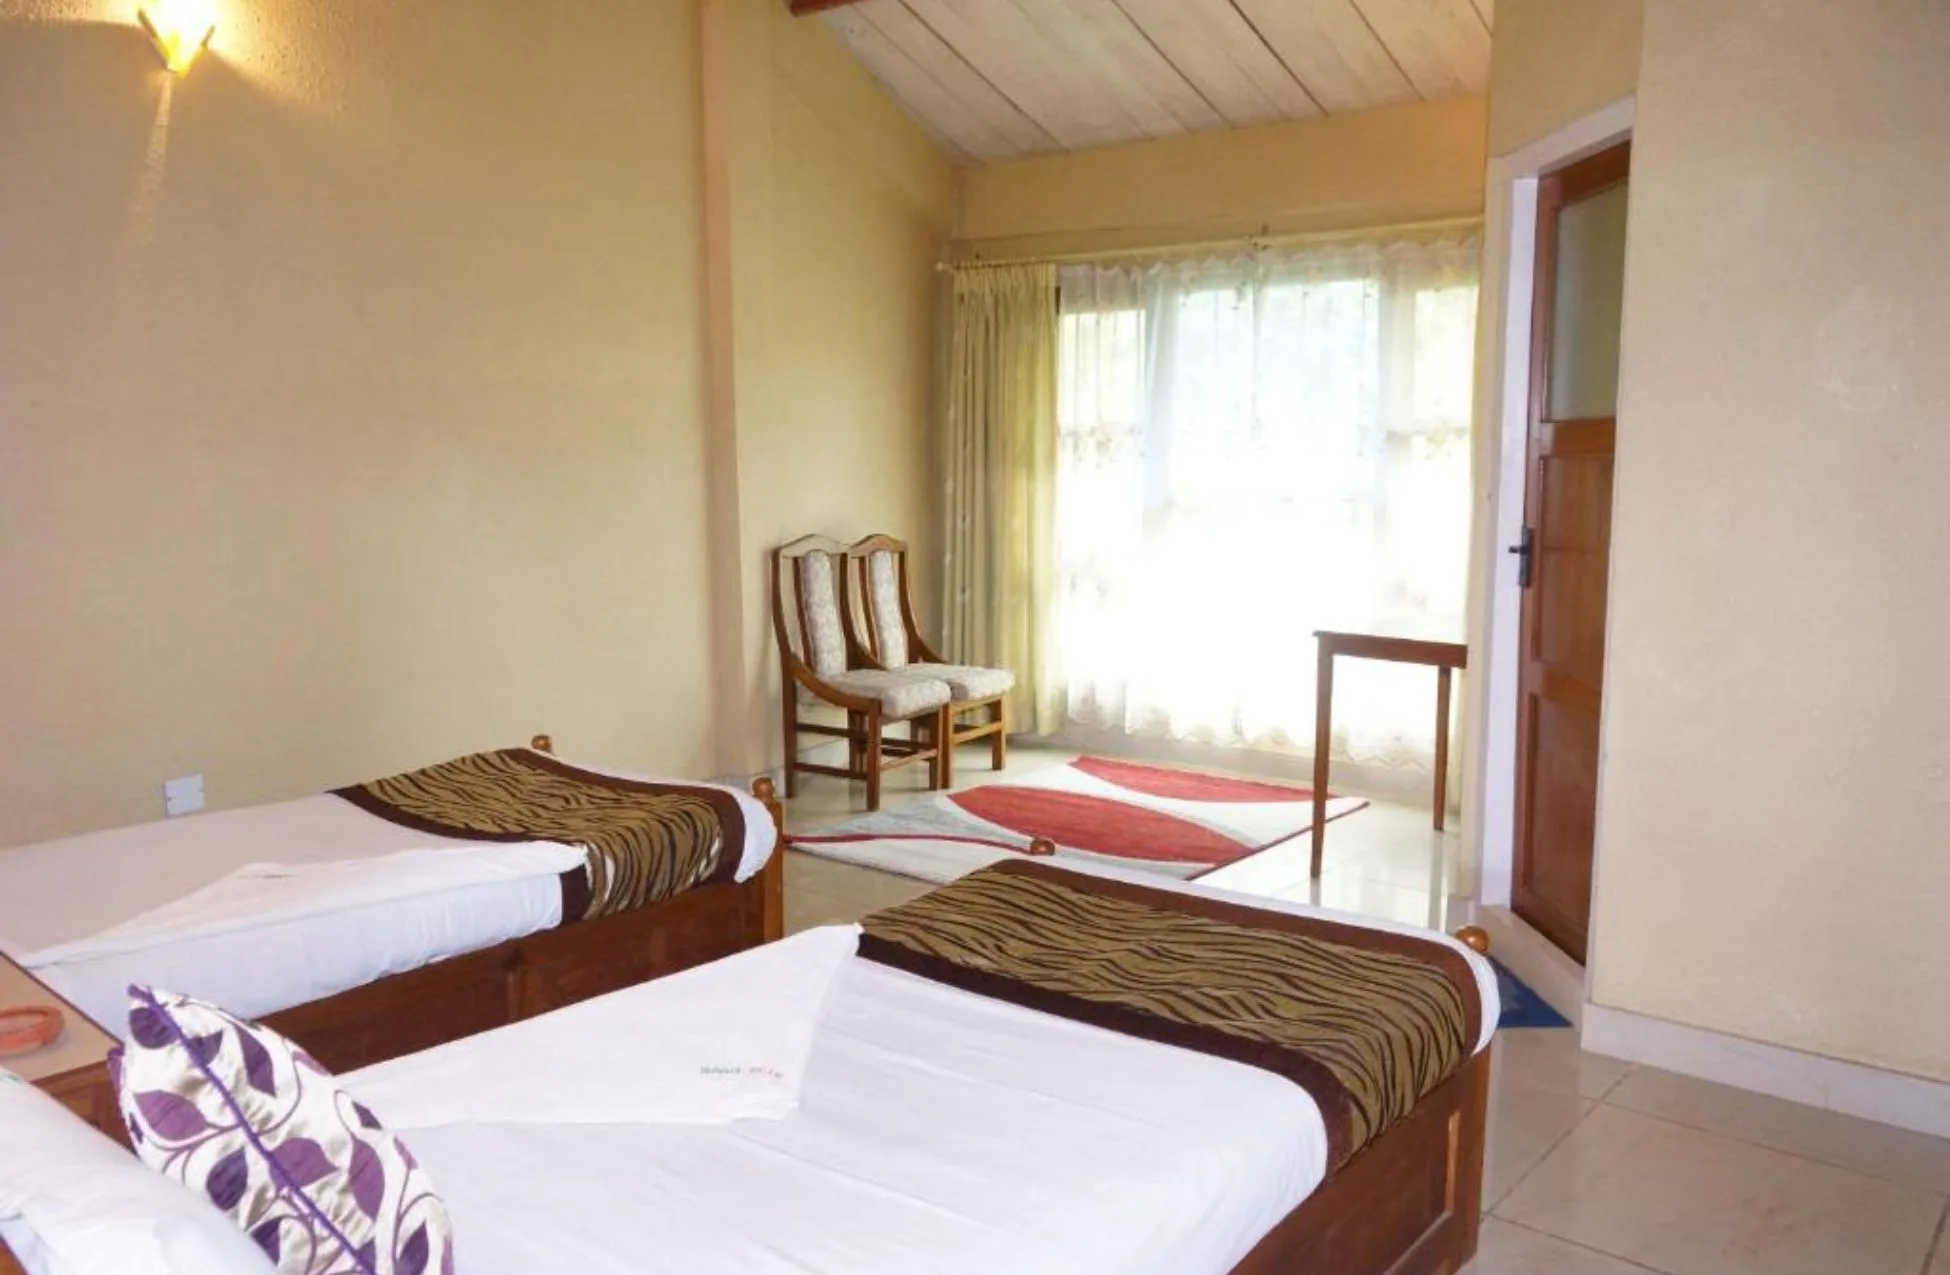 Baghmara Wildlife Resort - Best Hotels In Chitwan National Park Nepal